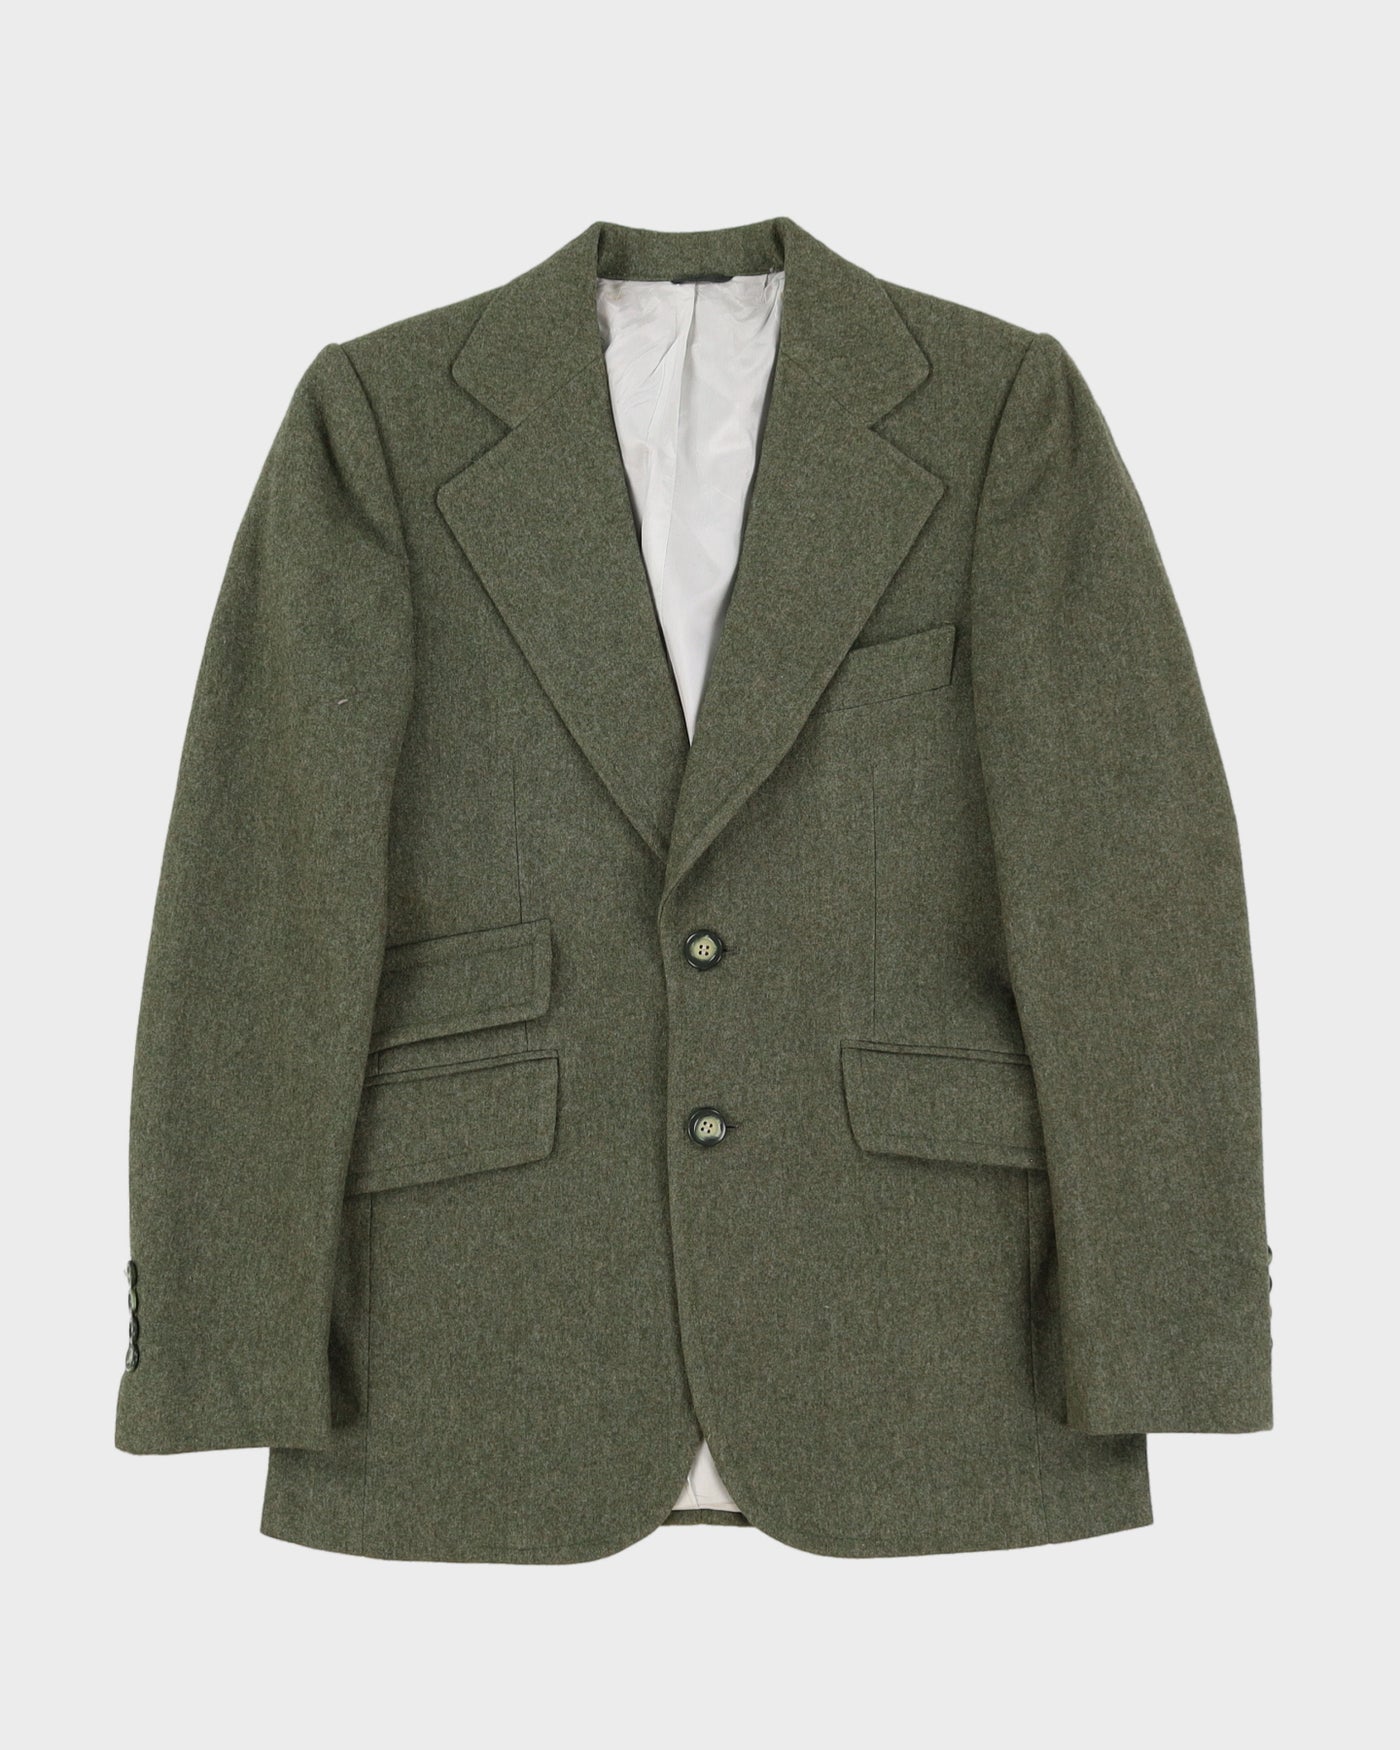 1970s Made In Italy Green Wool Blazer Jacket - XXXS